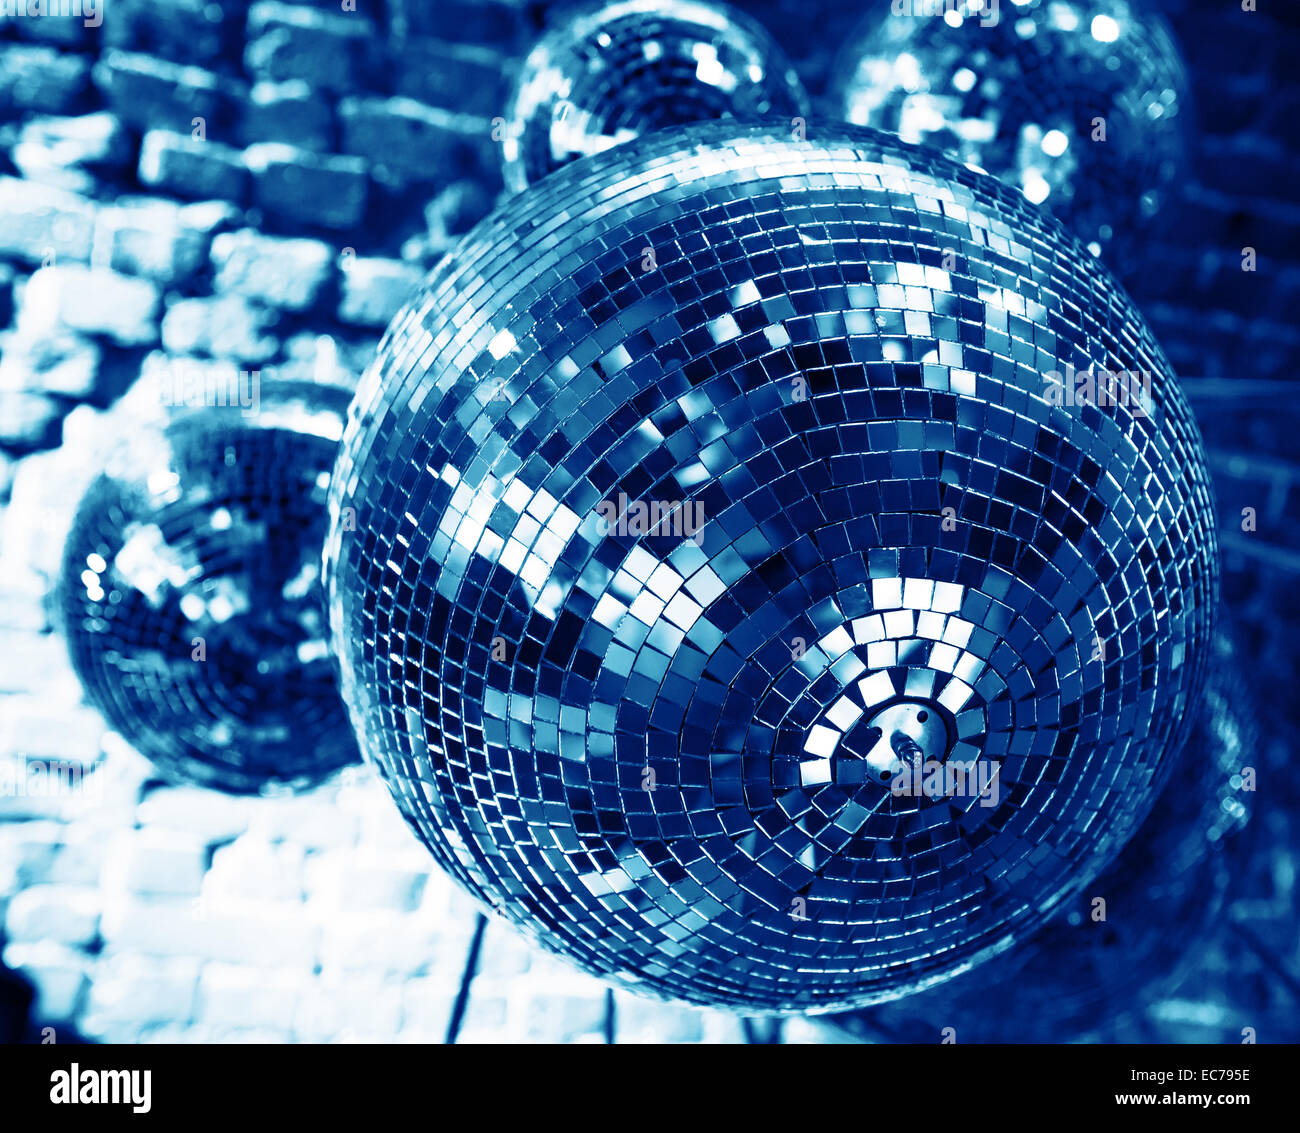 Arrière-plan bleu disco party avec boules miroirs reflétant les lumières Banque D'Images